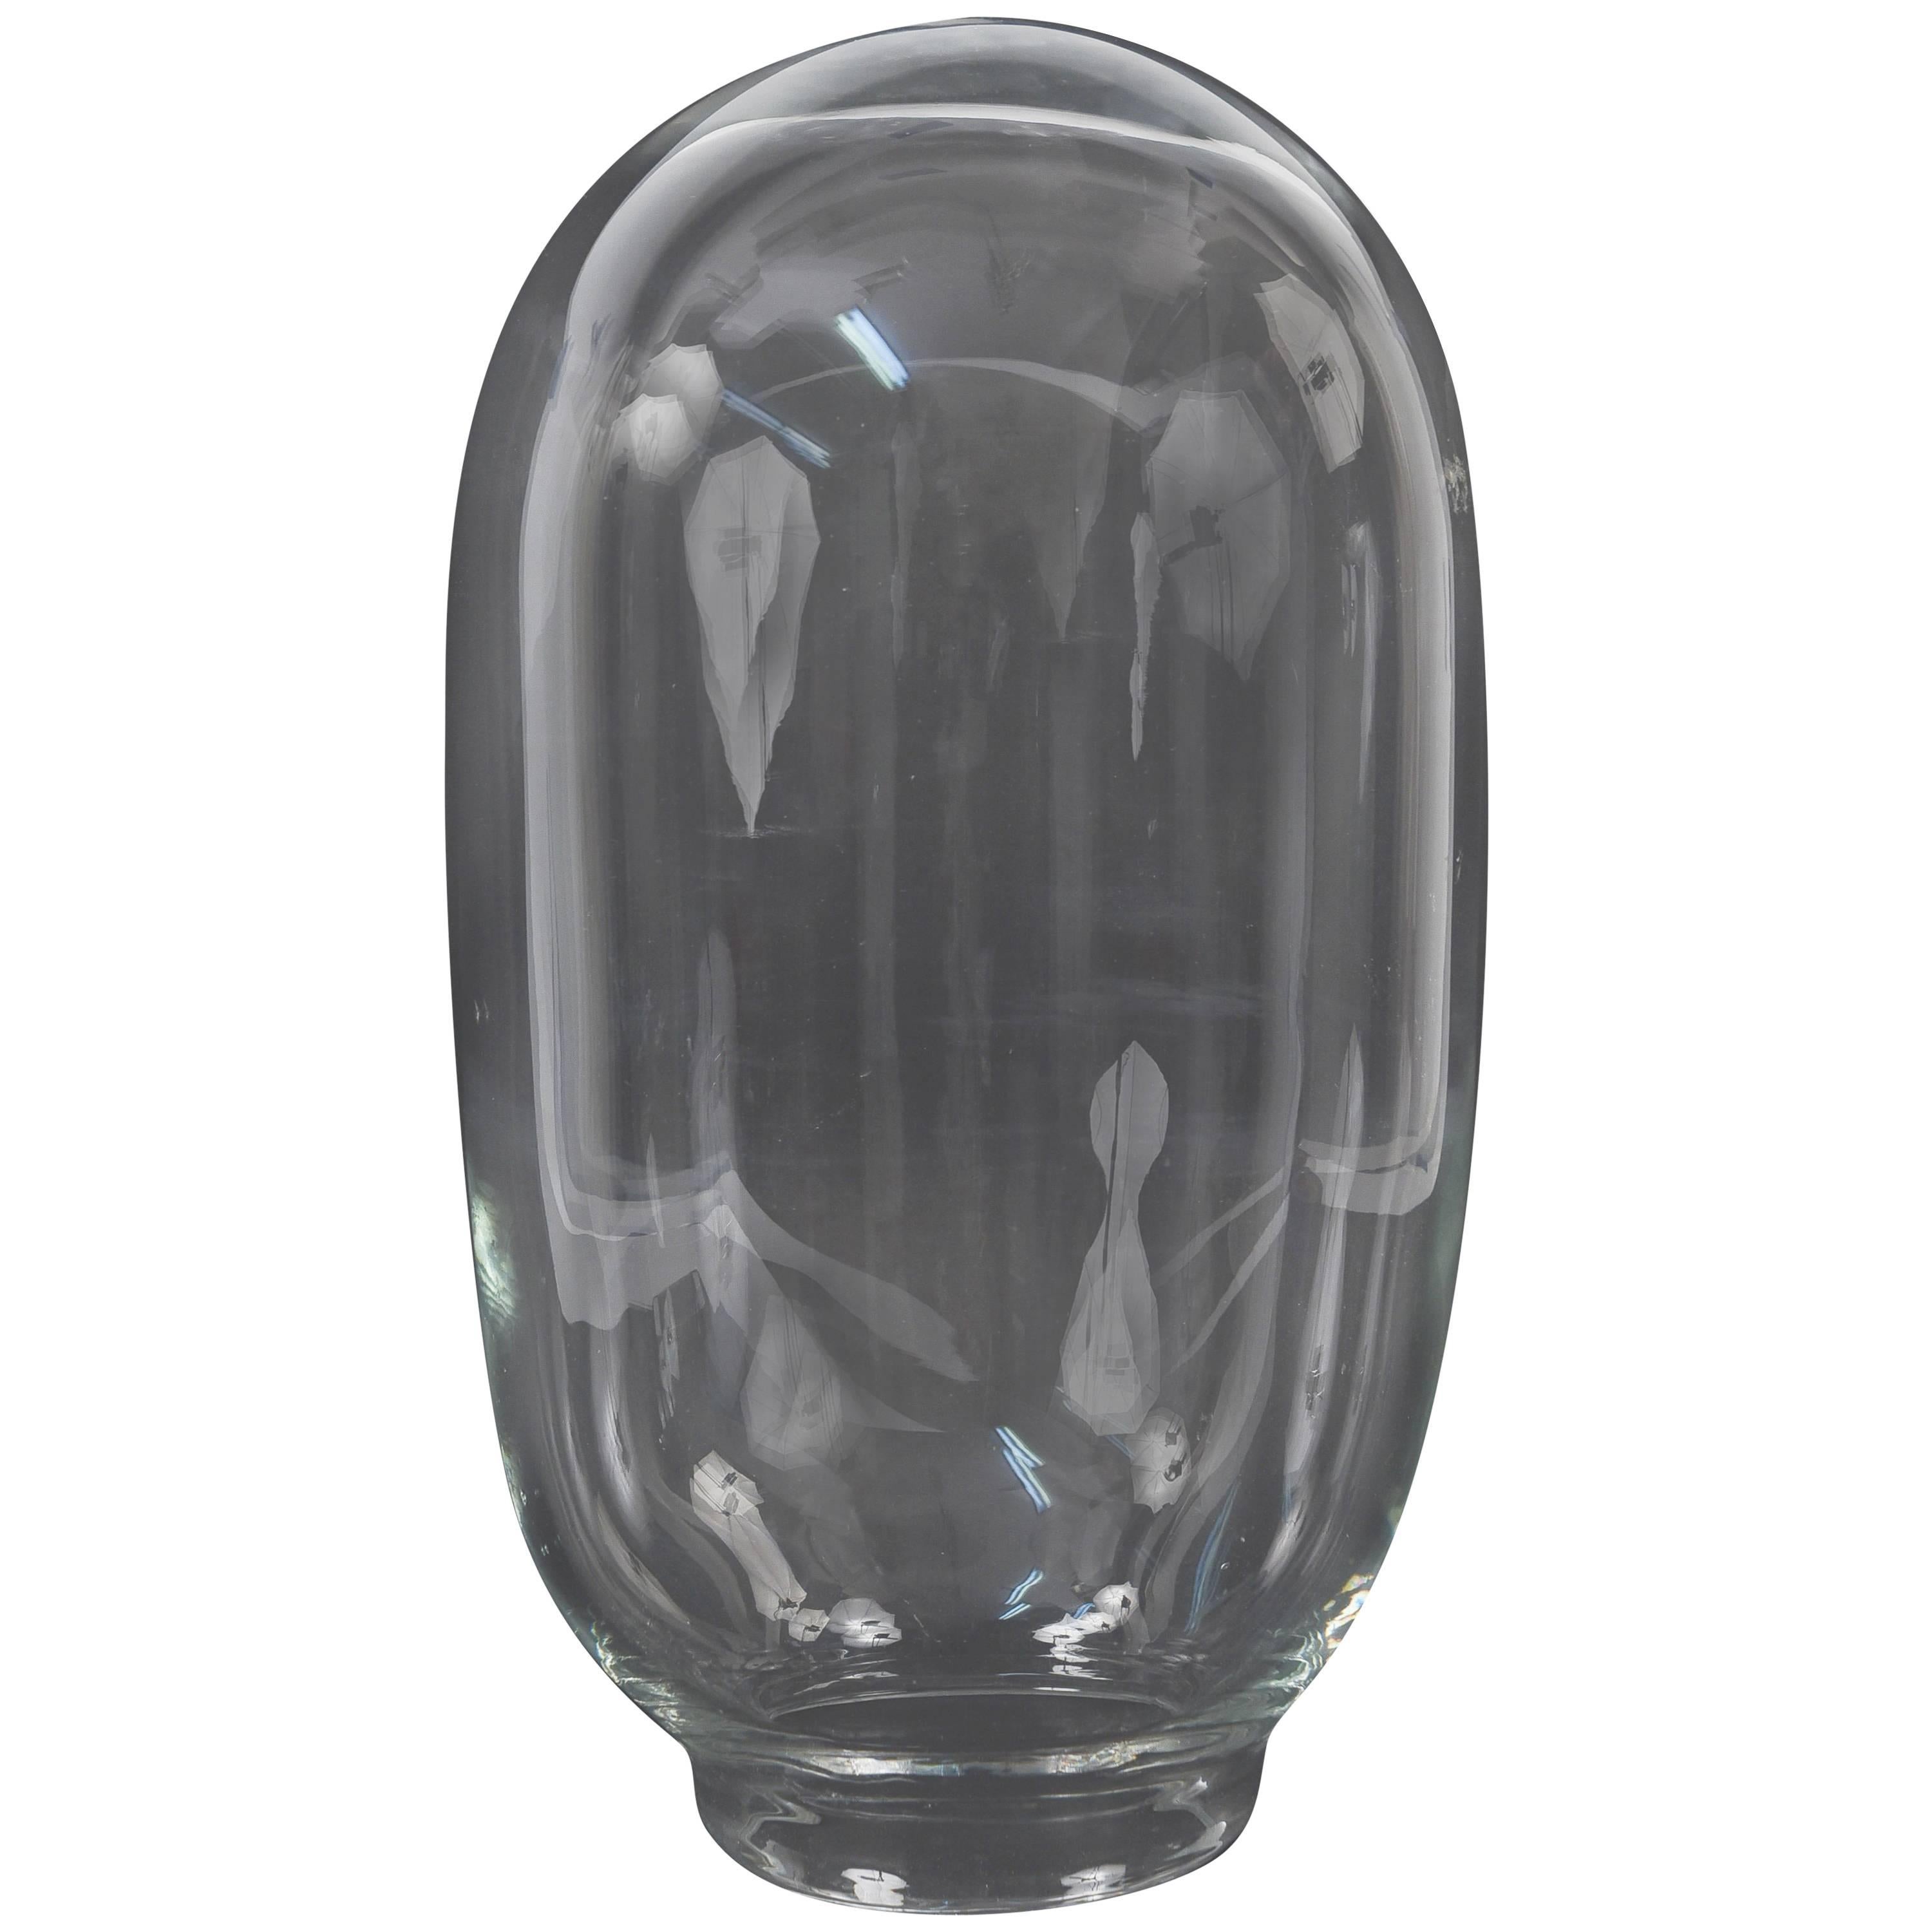 Scientific Handblown Glass Vacuum Dome For Sale